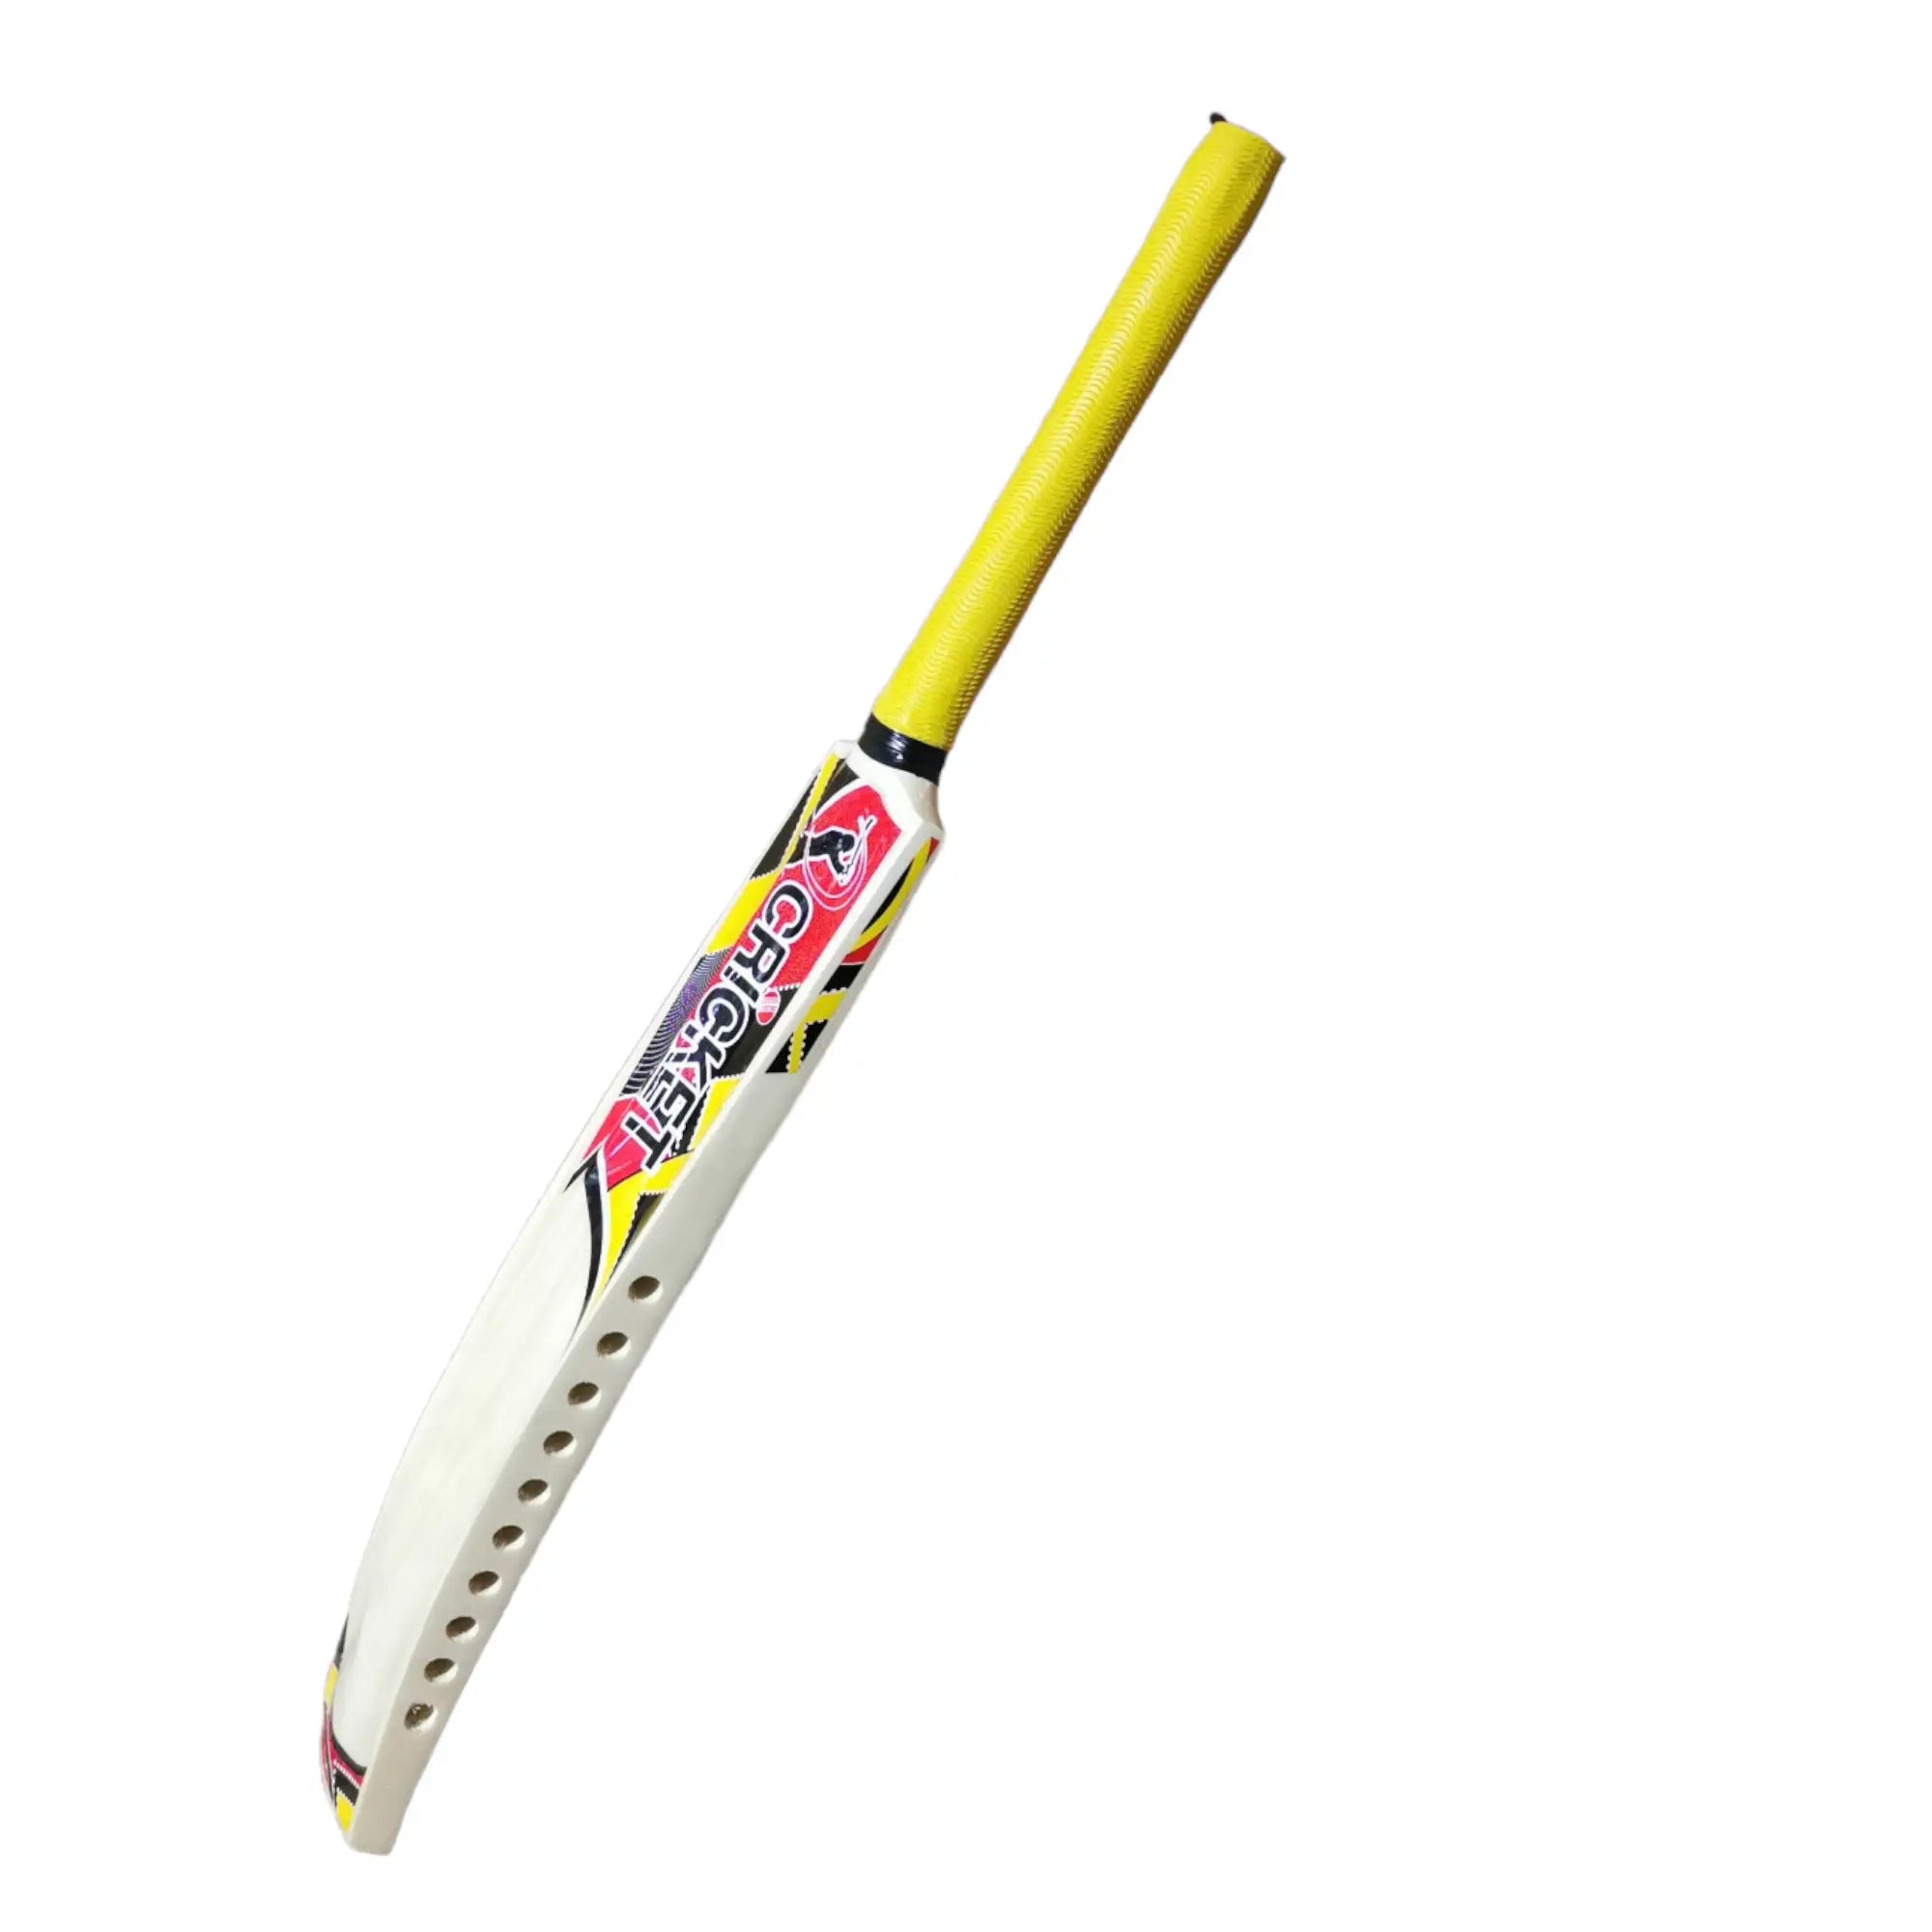 CBB Pro Plus Cricket Bat For Softball Tape Tennis Ball Lightweight Thick Edges Men - BATS - SOFTBALL